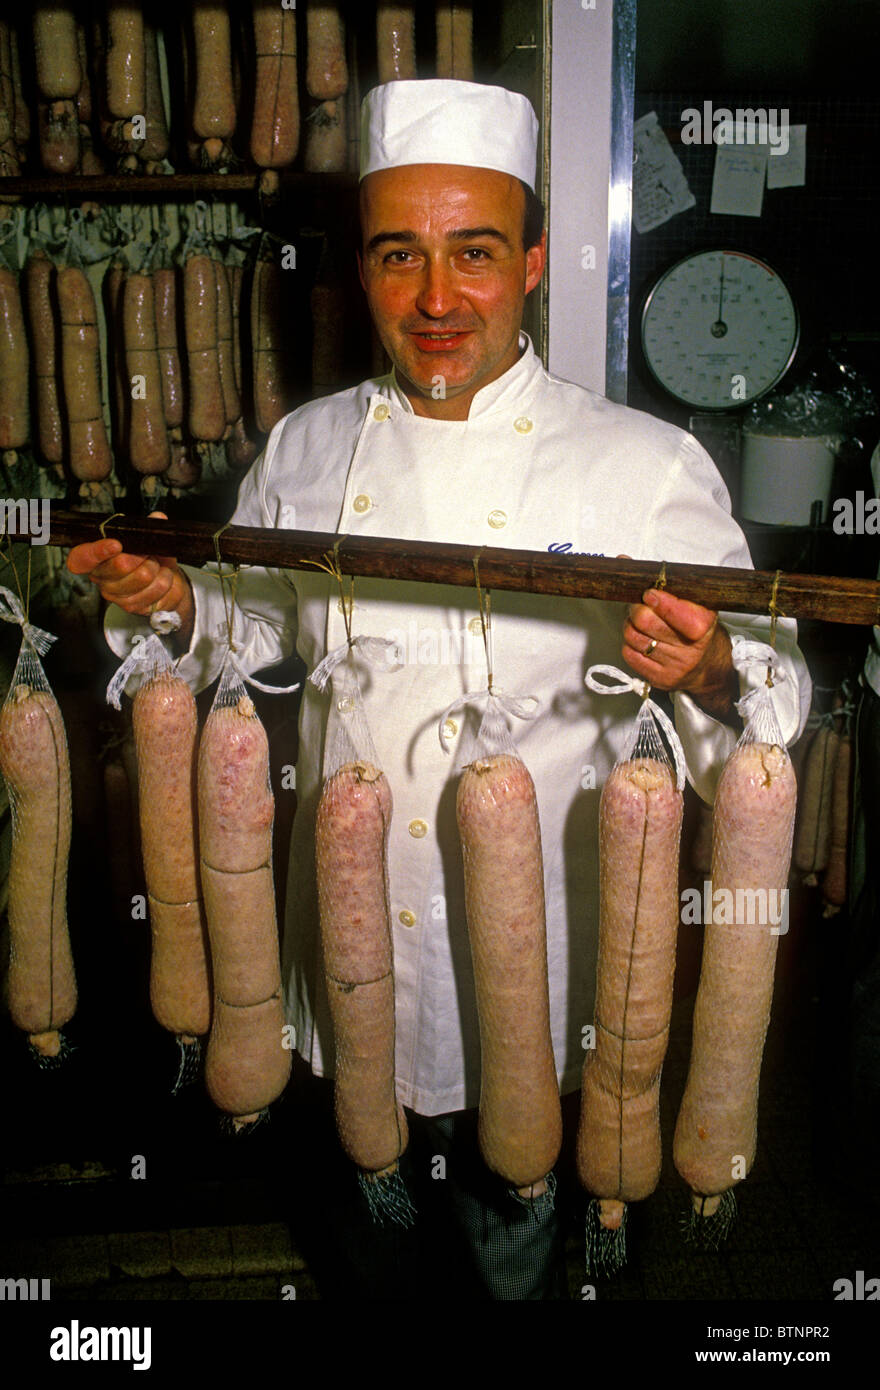 Georges de Latour, faisant de saucisse de porc, saucisse de porc, séchage, Charcutier, boucher charcutier, charcuterie, charcuterie de Latour, Lyon, France Banque D'Images